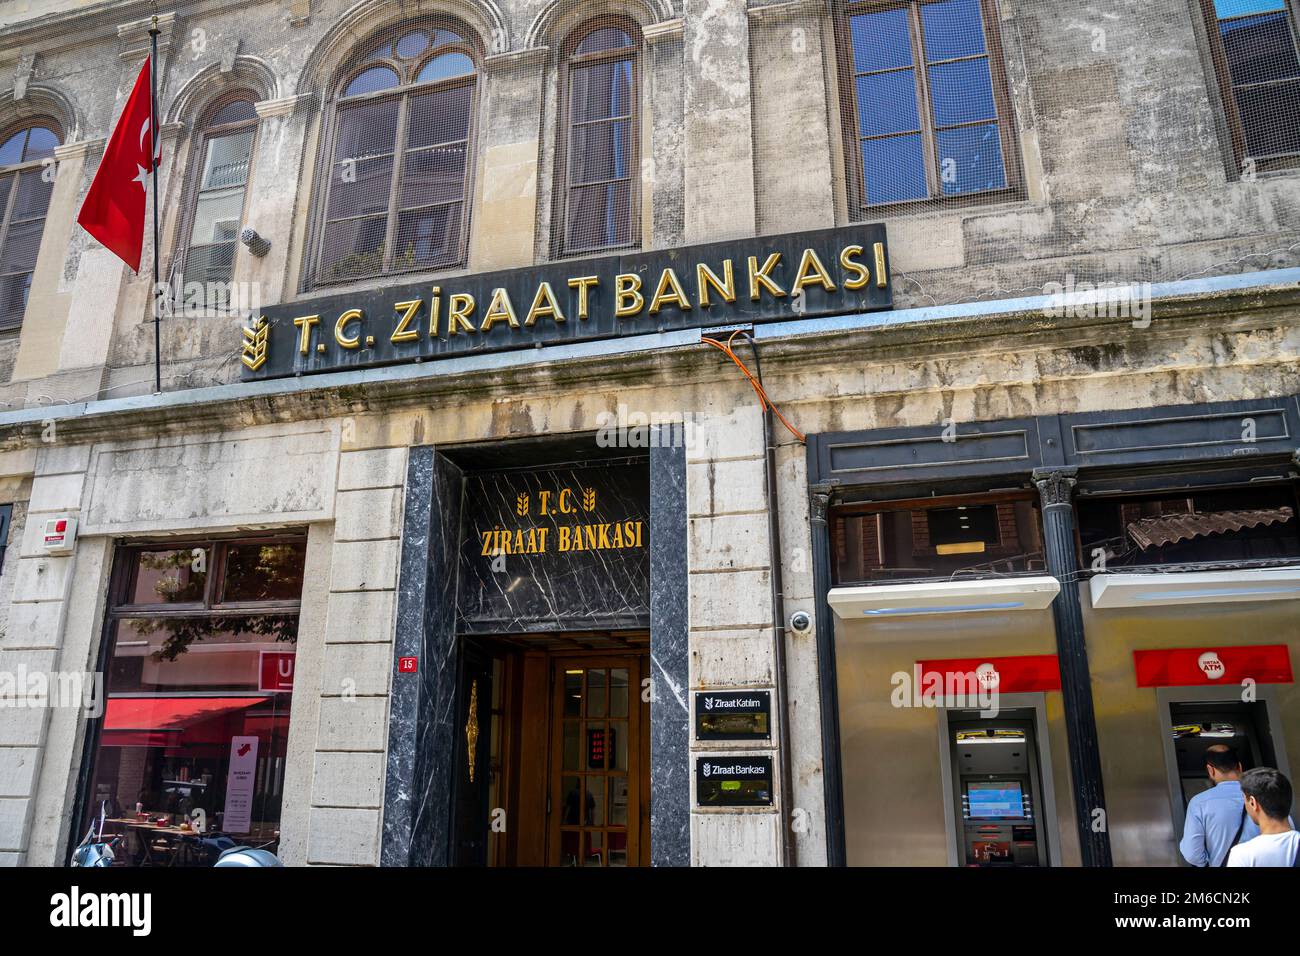 Banche storiche in Turchia. Ziraat Bankası Bahçekapı/ - stambul Şubesi Foto Stock